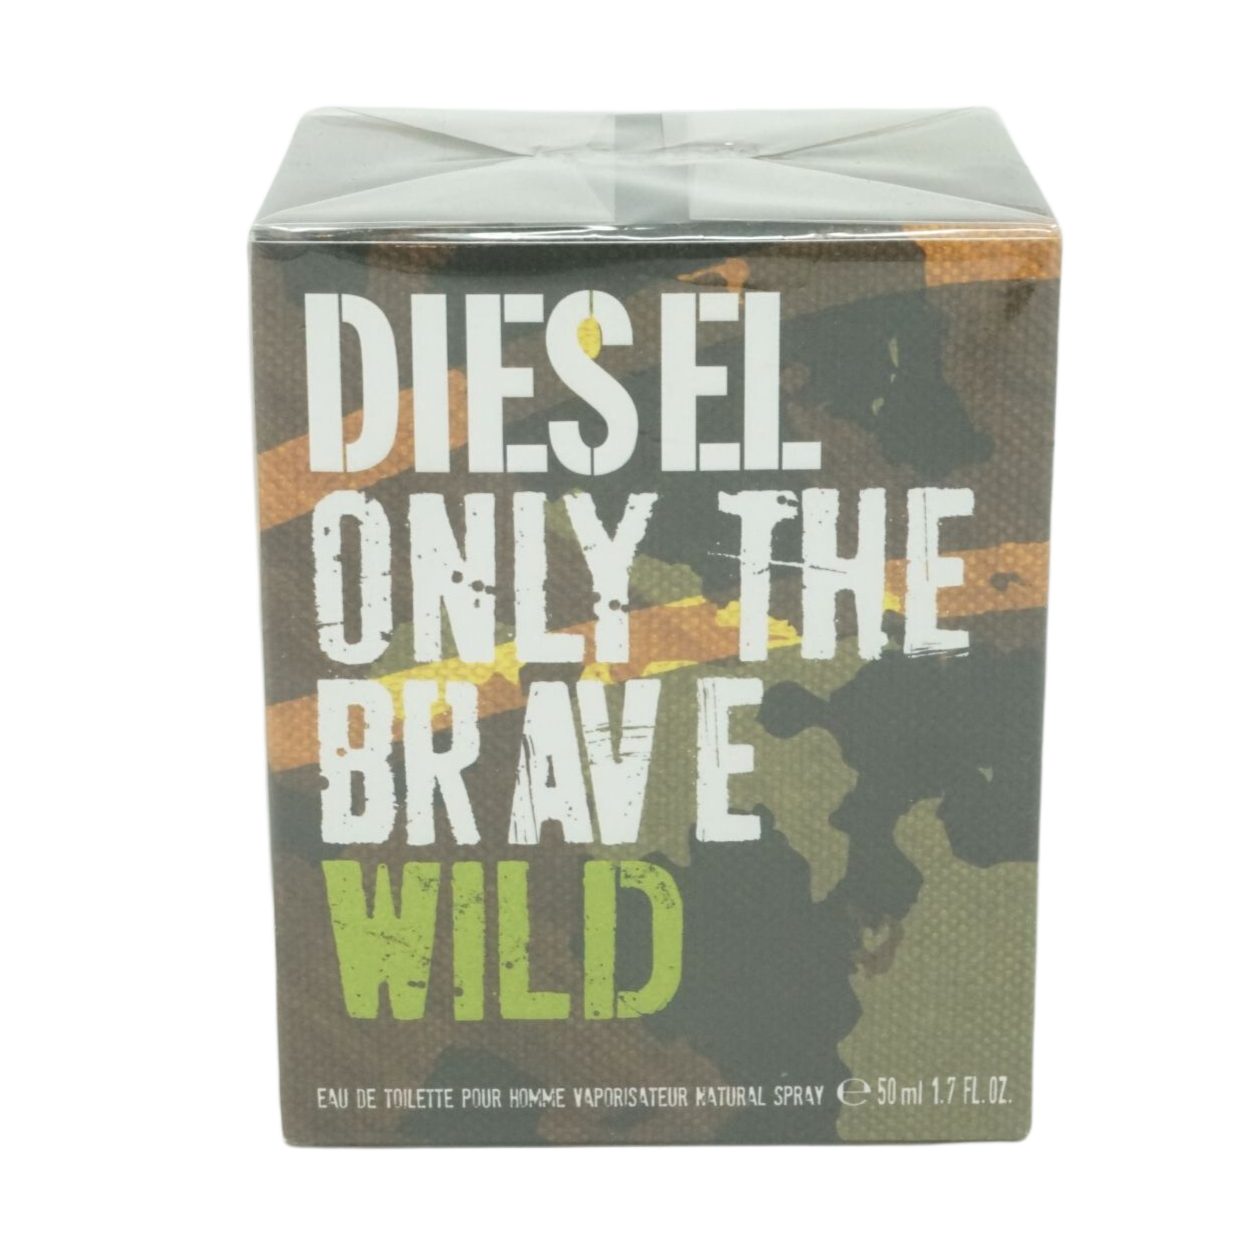 de 50ml Only the Brave Homme Anti-Falten-Serum Eau Diesel Diesel Wild Spray Toilette